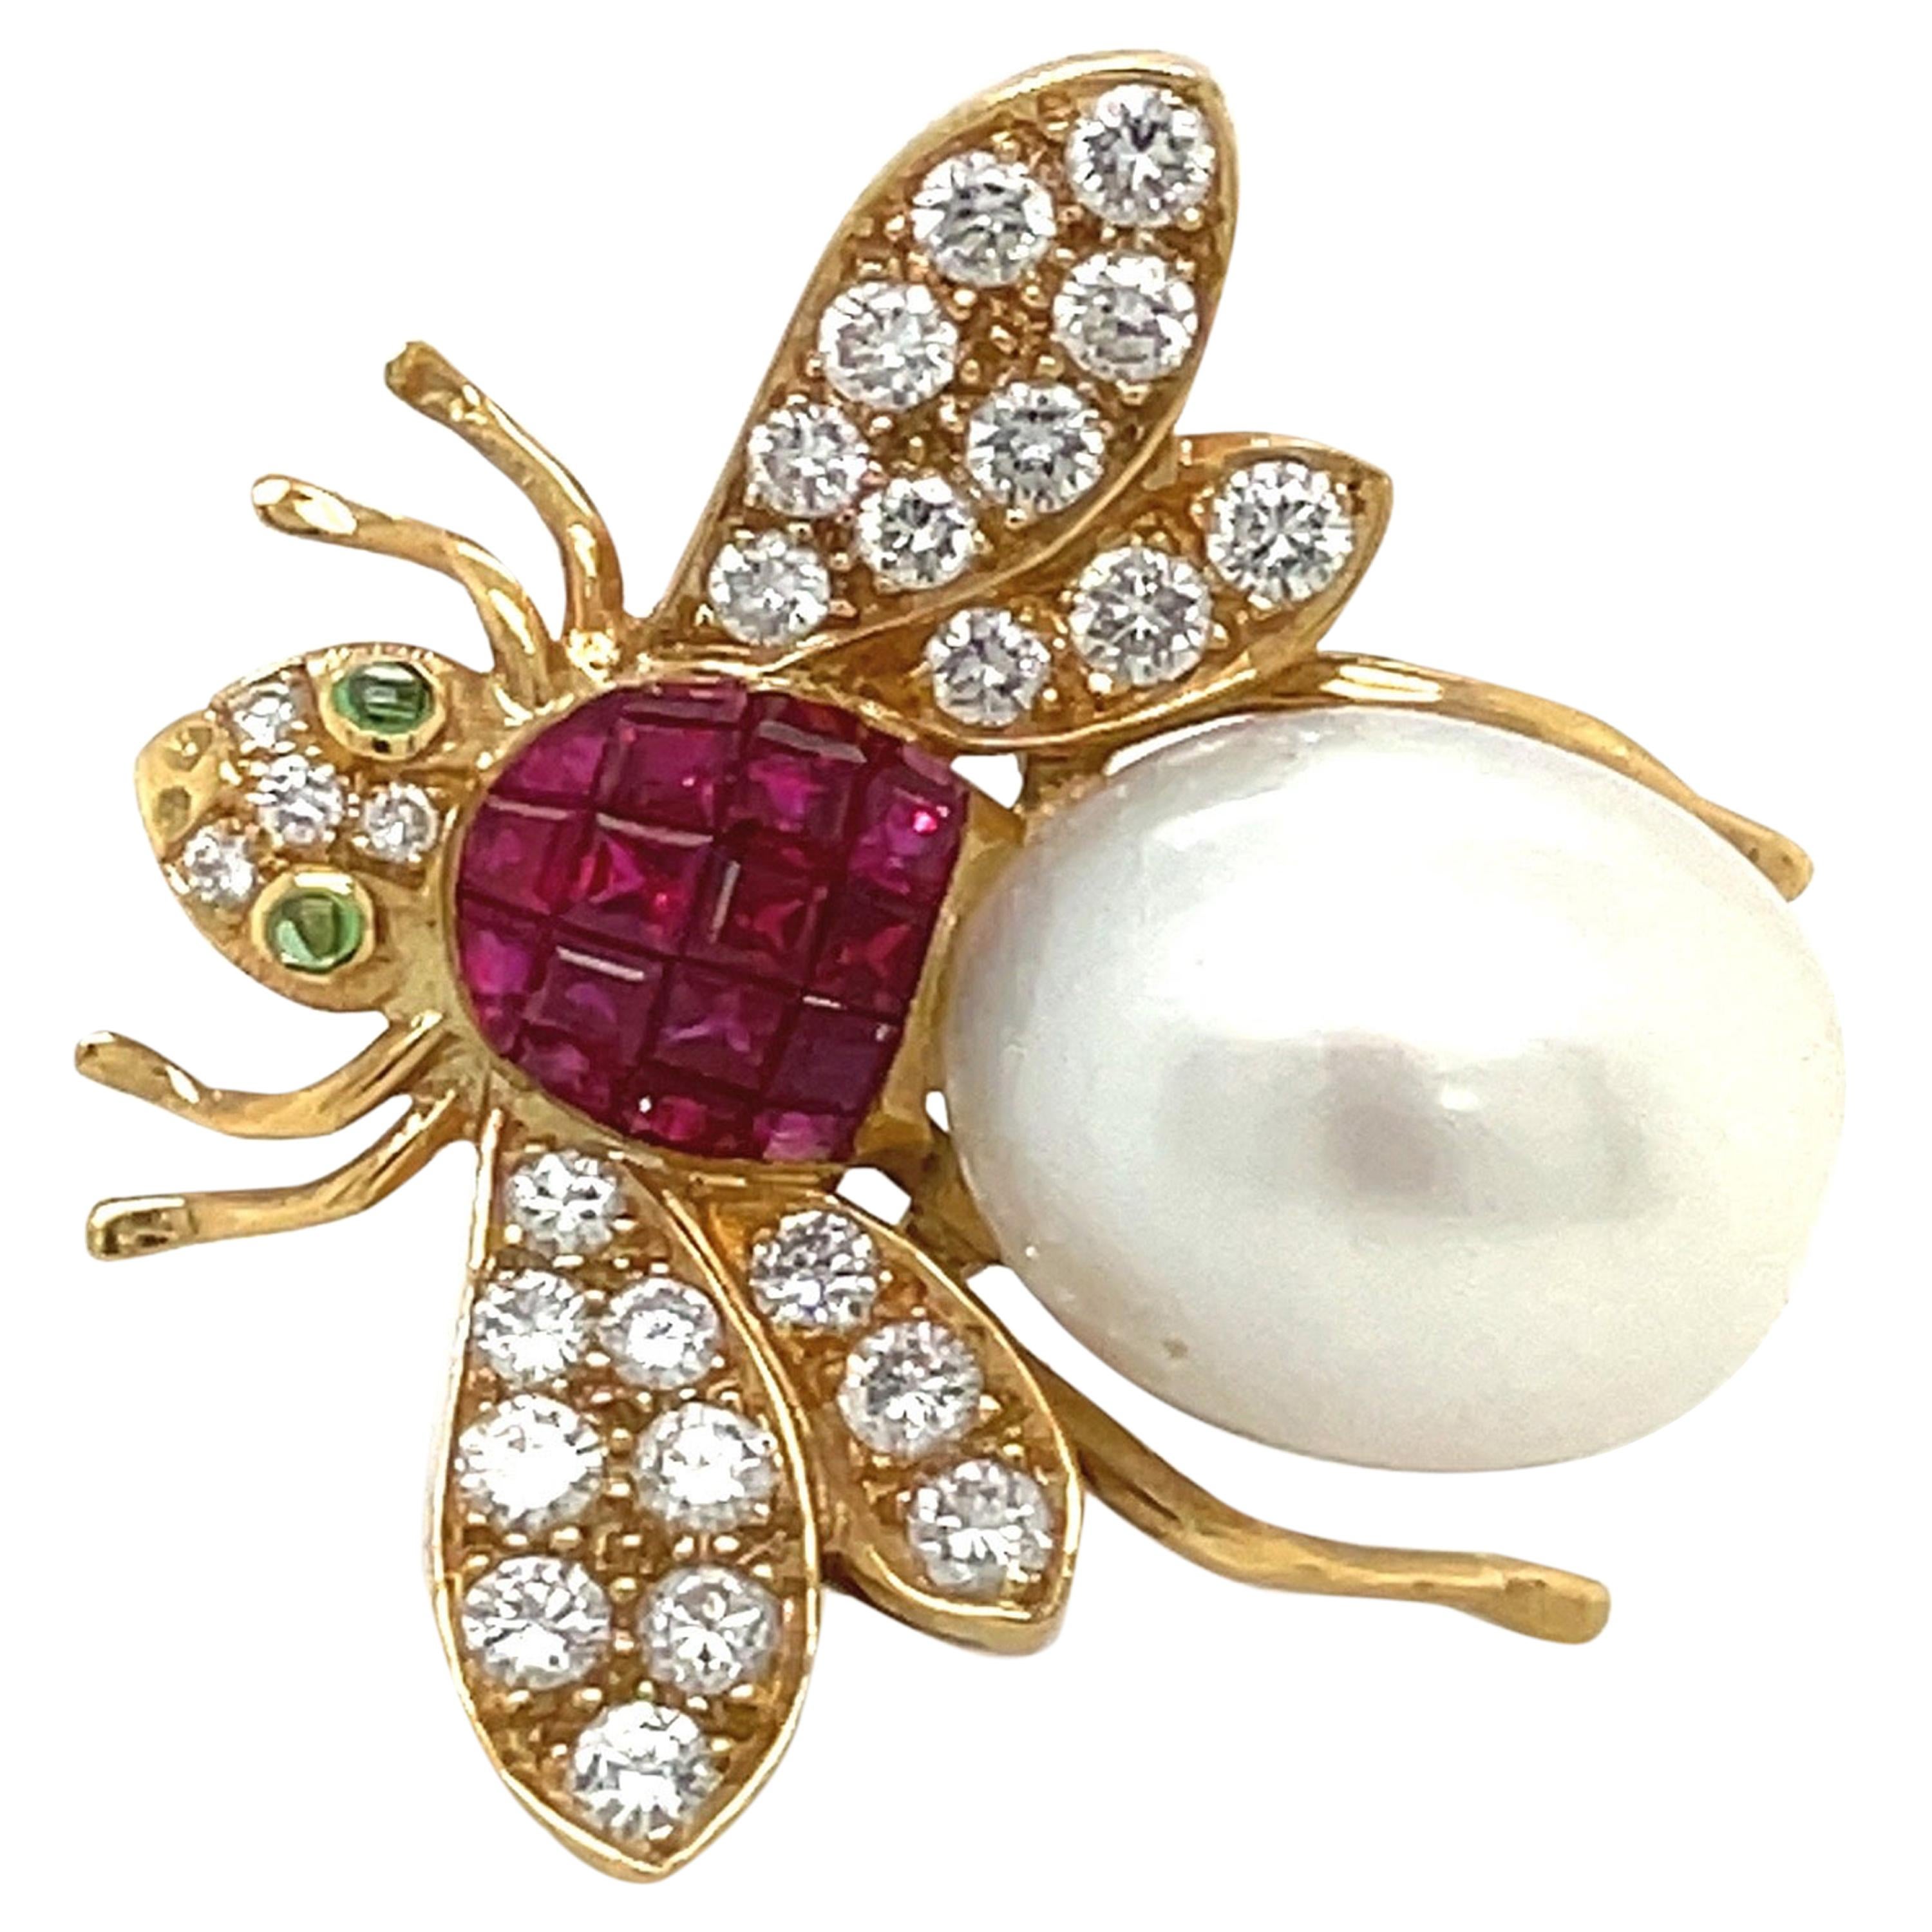 Broche abeille en or 18 carats avec diamants de 0,94 carat, rubis de 1,77 carat et perle des mers du Sud